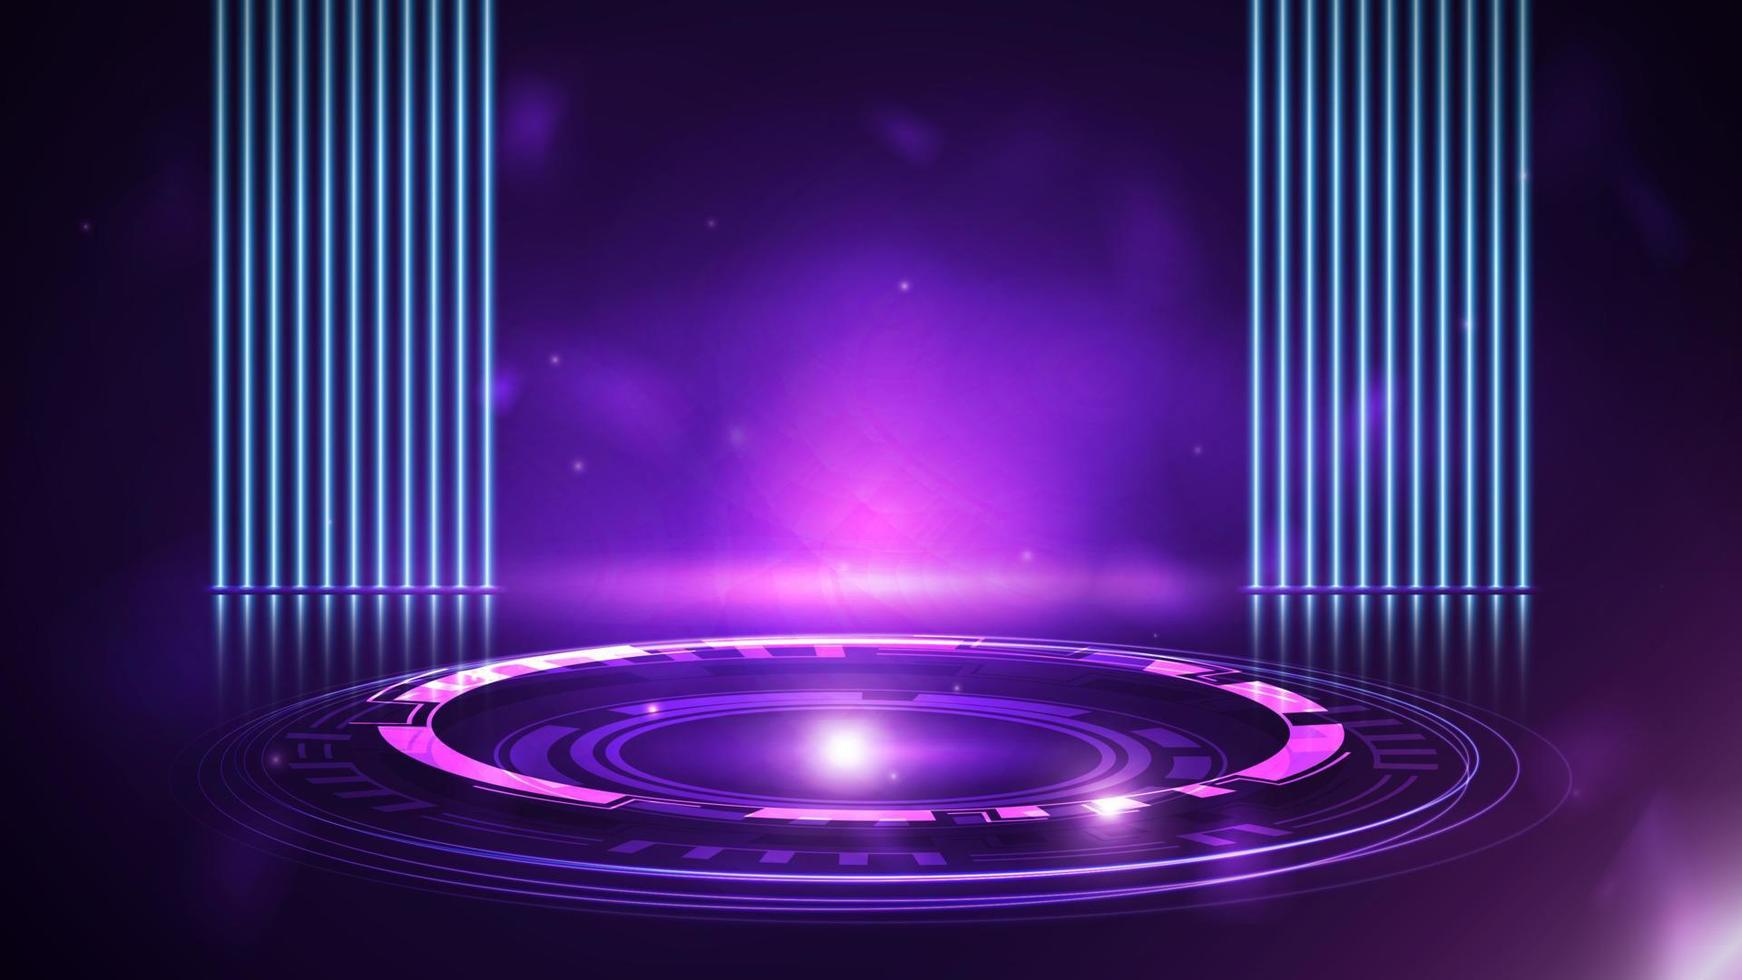 scène vide violette avec lampes au néon de ligne bleue sur fond et podium numérique rose avec hologramme d'anneaux numériques dans une pièce sombre vecteur